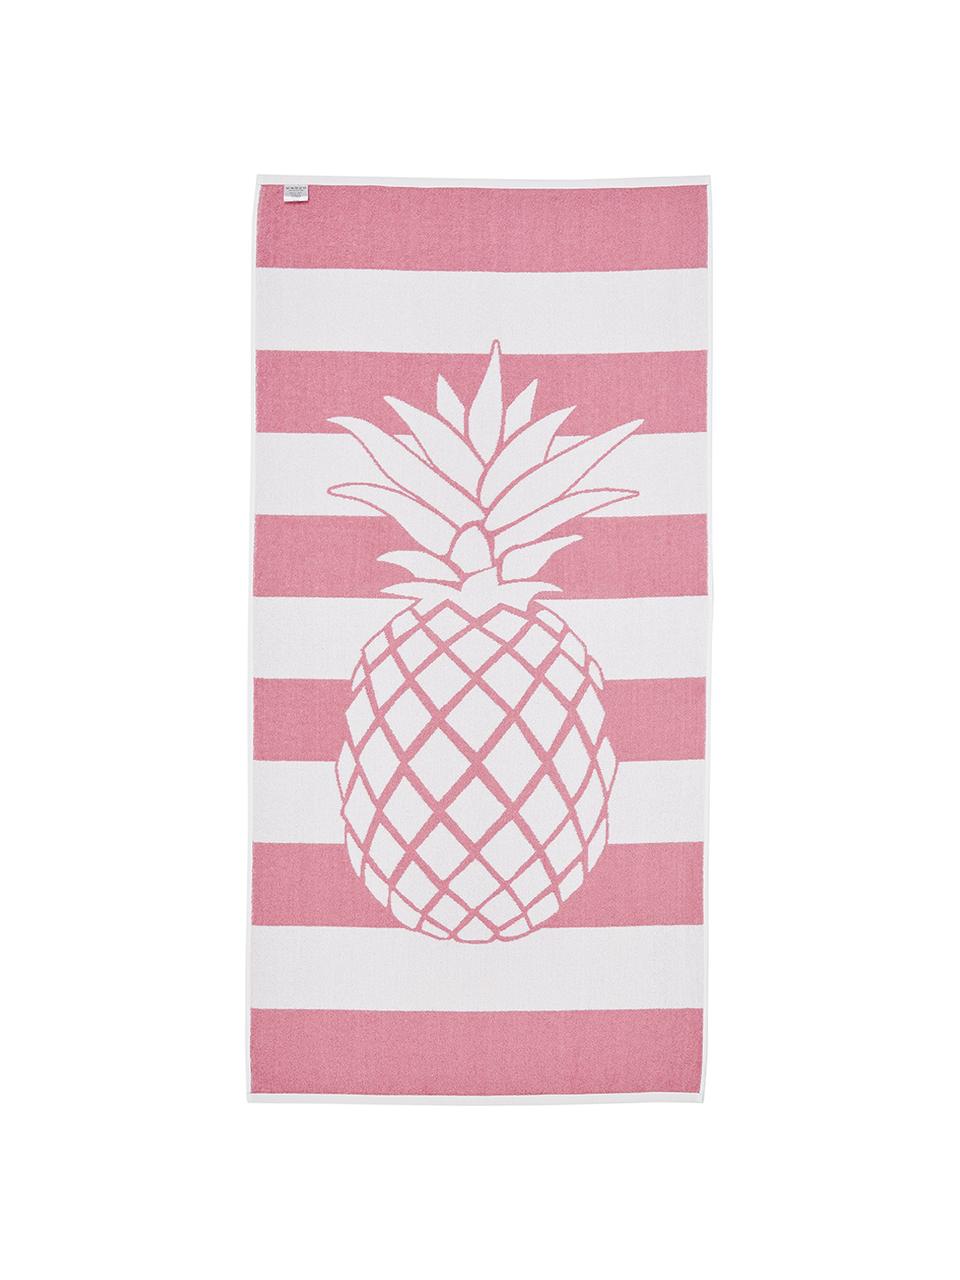 Gestreiftes Strandtuch Asan mit Ananas-Motiv, 100% Baumwolle
leichte Qualität 380 g/m², Pink, Weiß, 80 x 160 cm